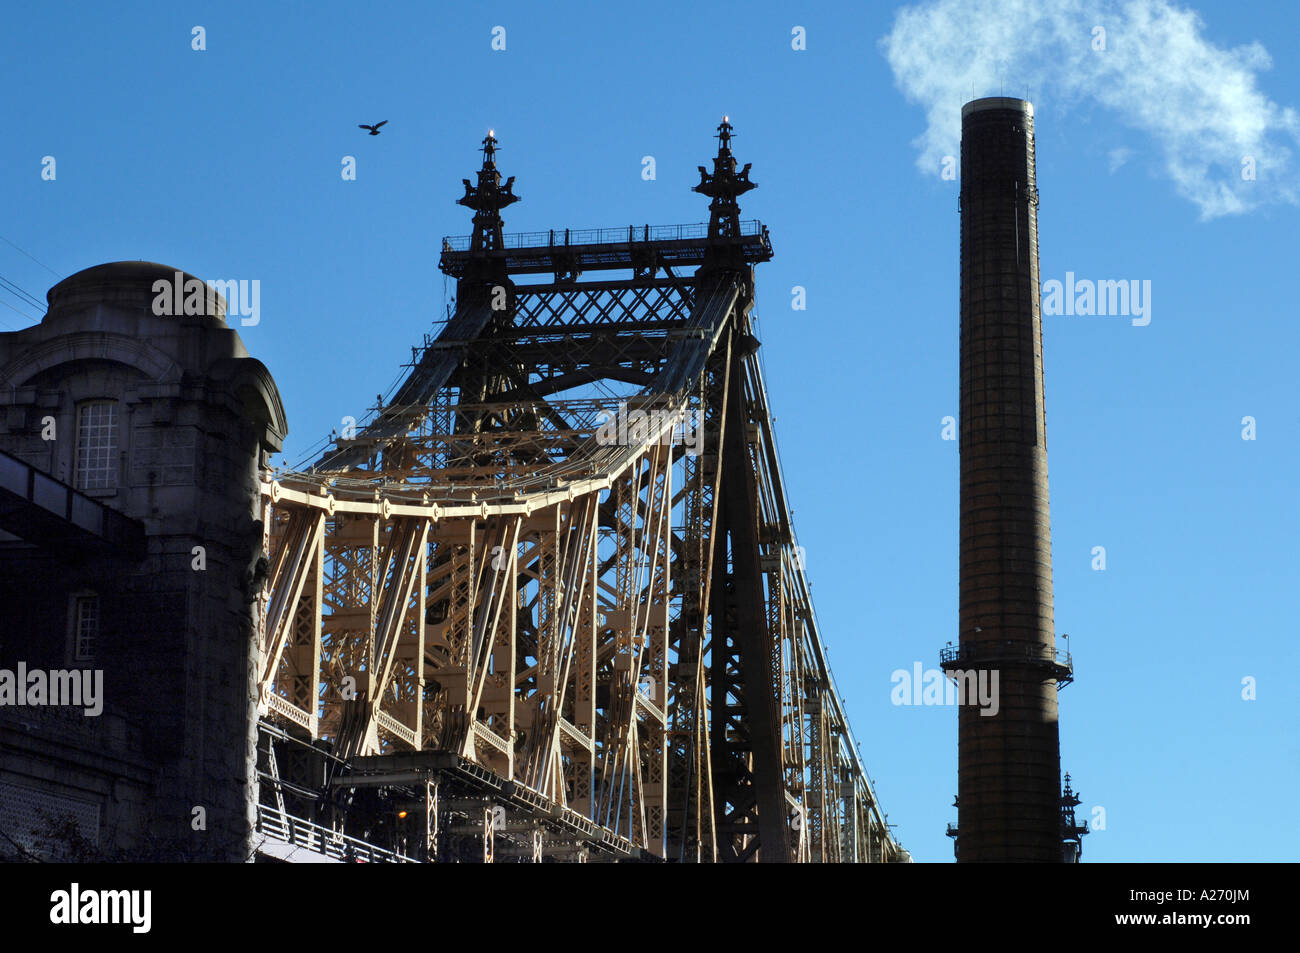 Die Queensborough Bridge 59th Street Manhattan New York City USA geht über den East River, Stadtteil Queens Stockfoto